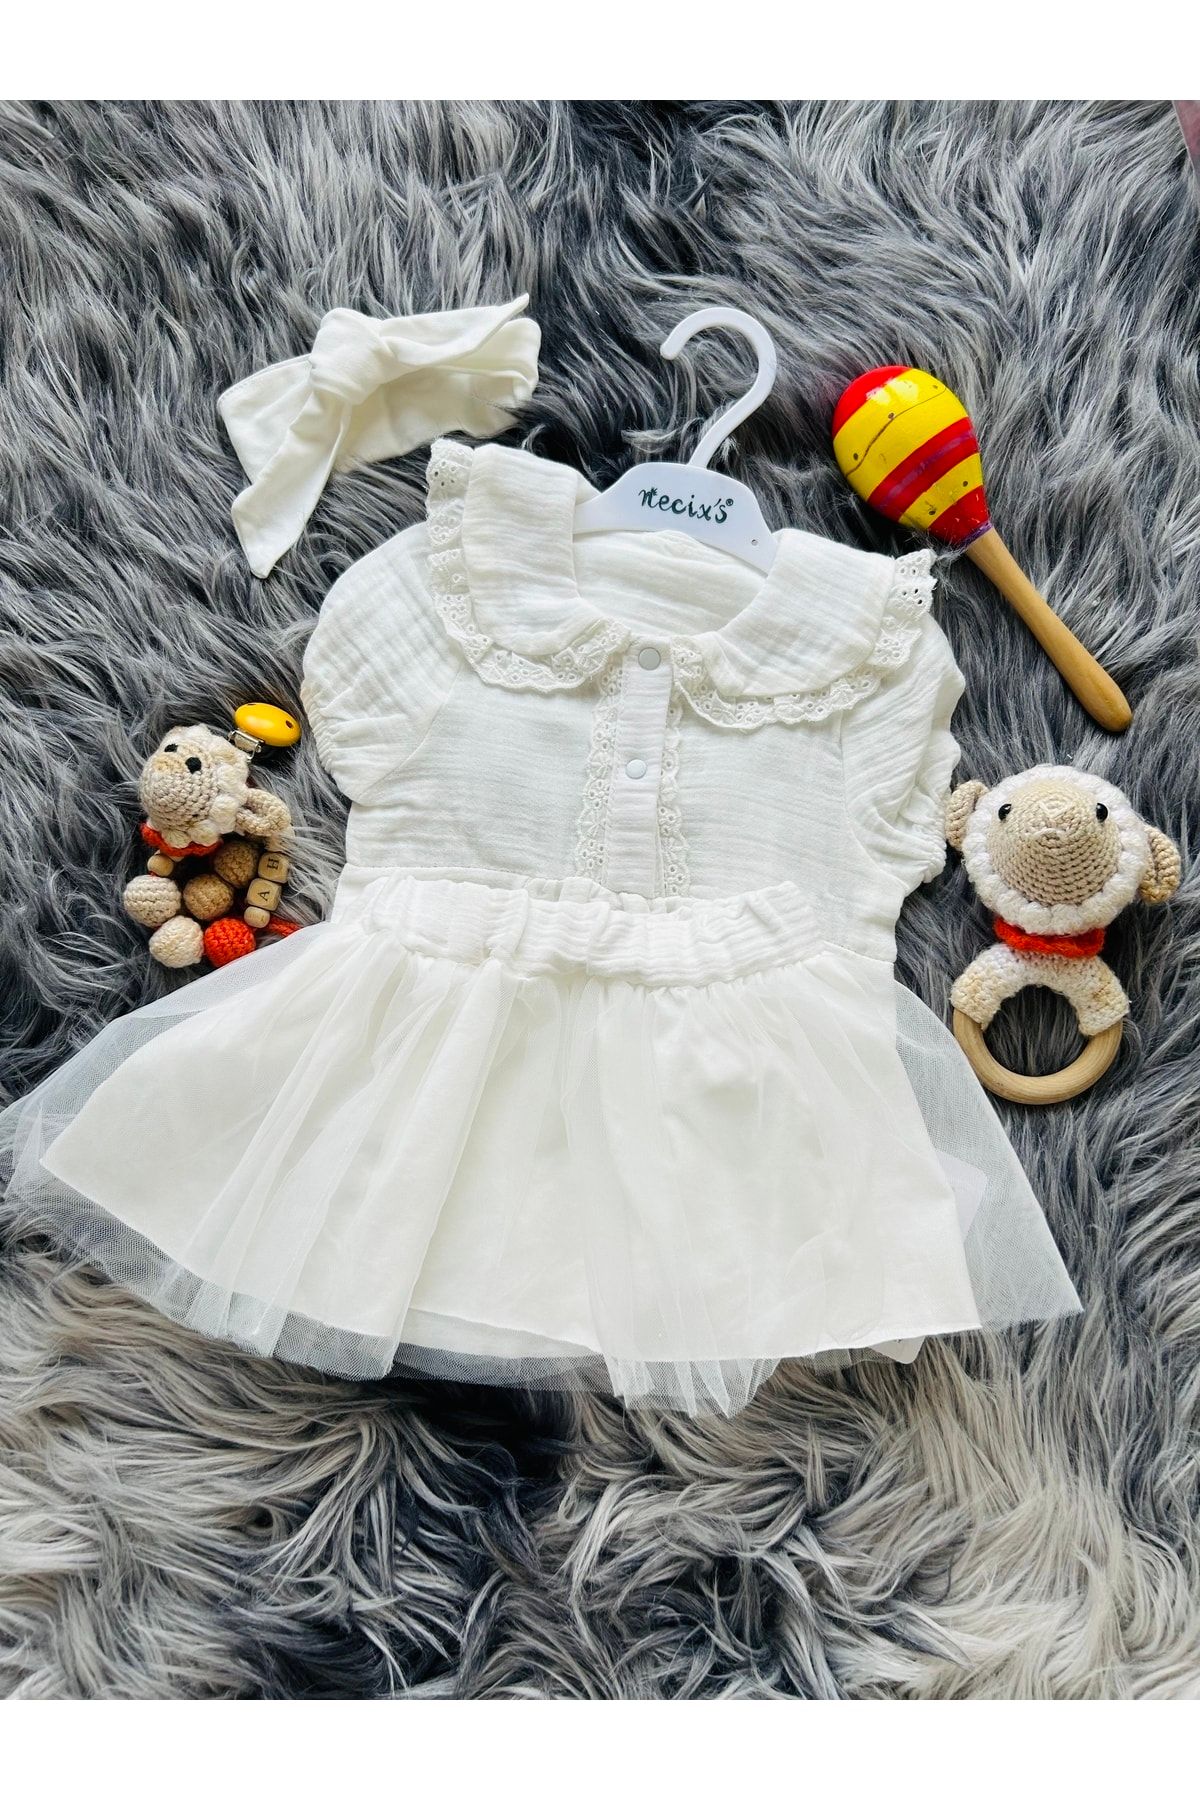 Necix's Kız Bebek Beyaz Müslin Kumaş Tütülü Etek Bandana Lı Yeni Sezon Yazlık Takım